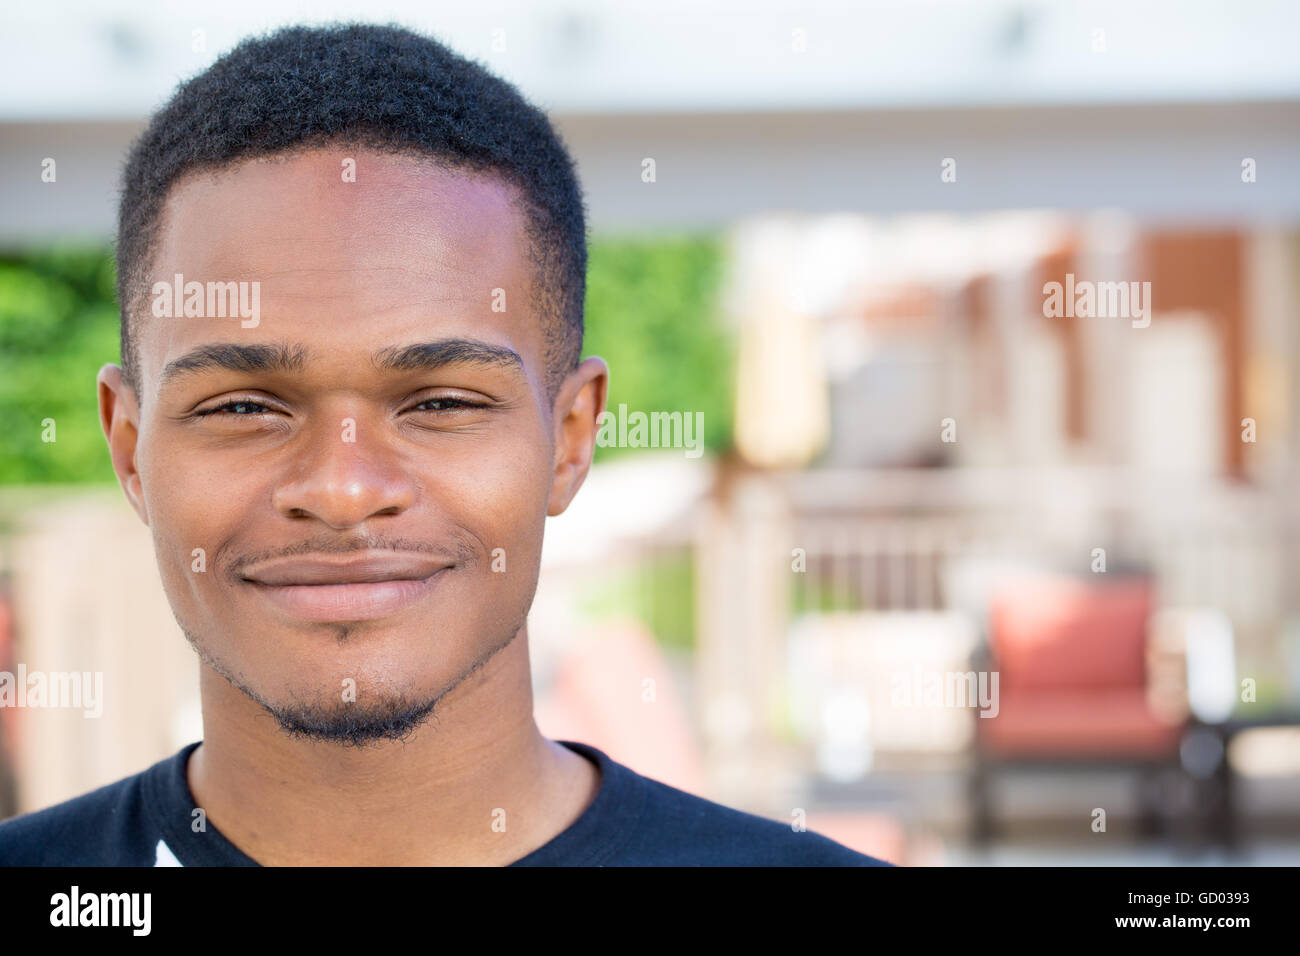 Closeup Kopfschuss Porträt von feinen jungen Mann, St Student, lächelnd, isoliert auf draußen im freien Hintergrund. Kunde satis Stockfoto